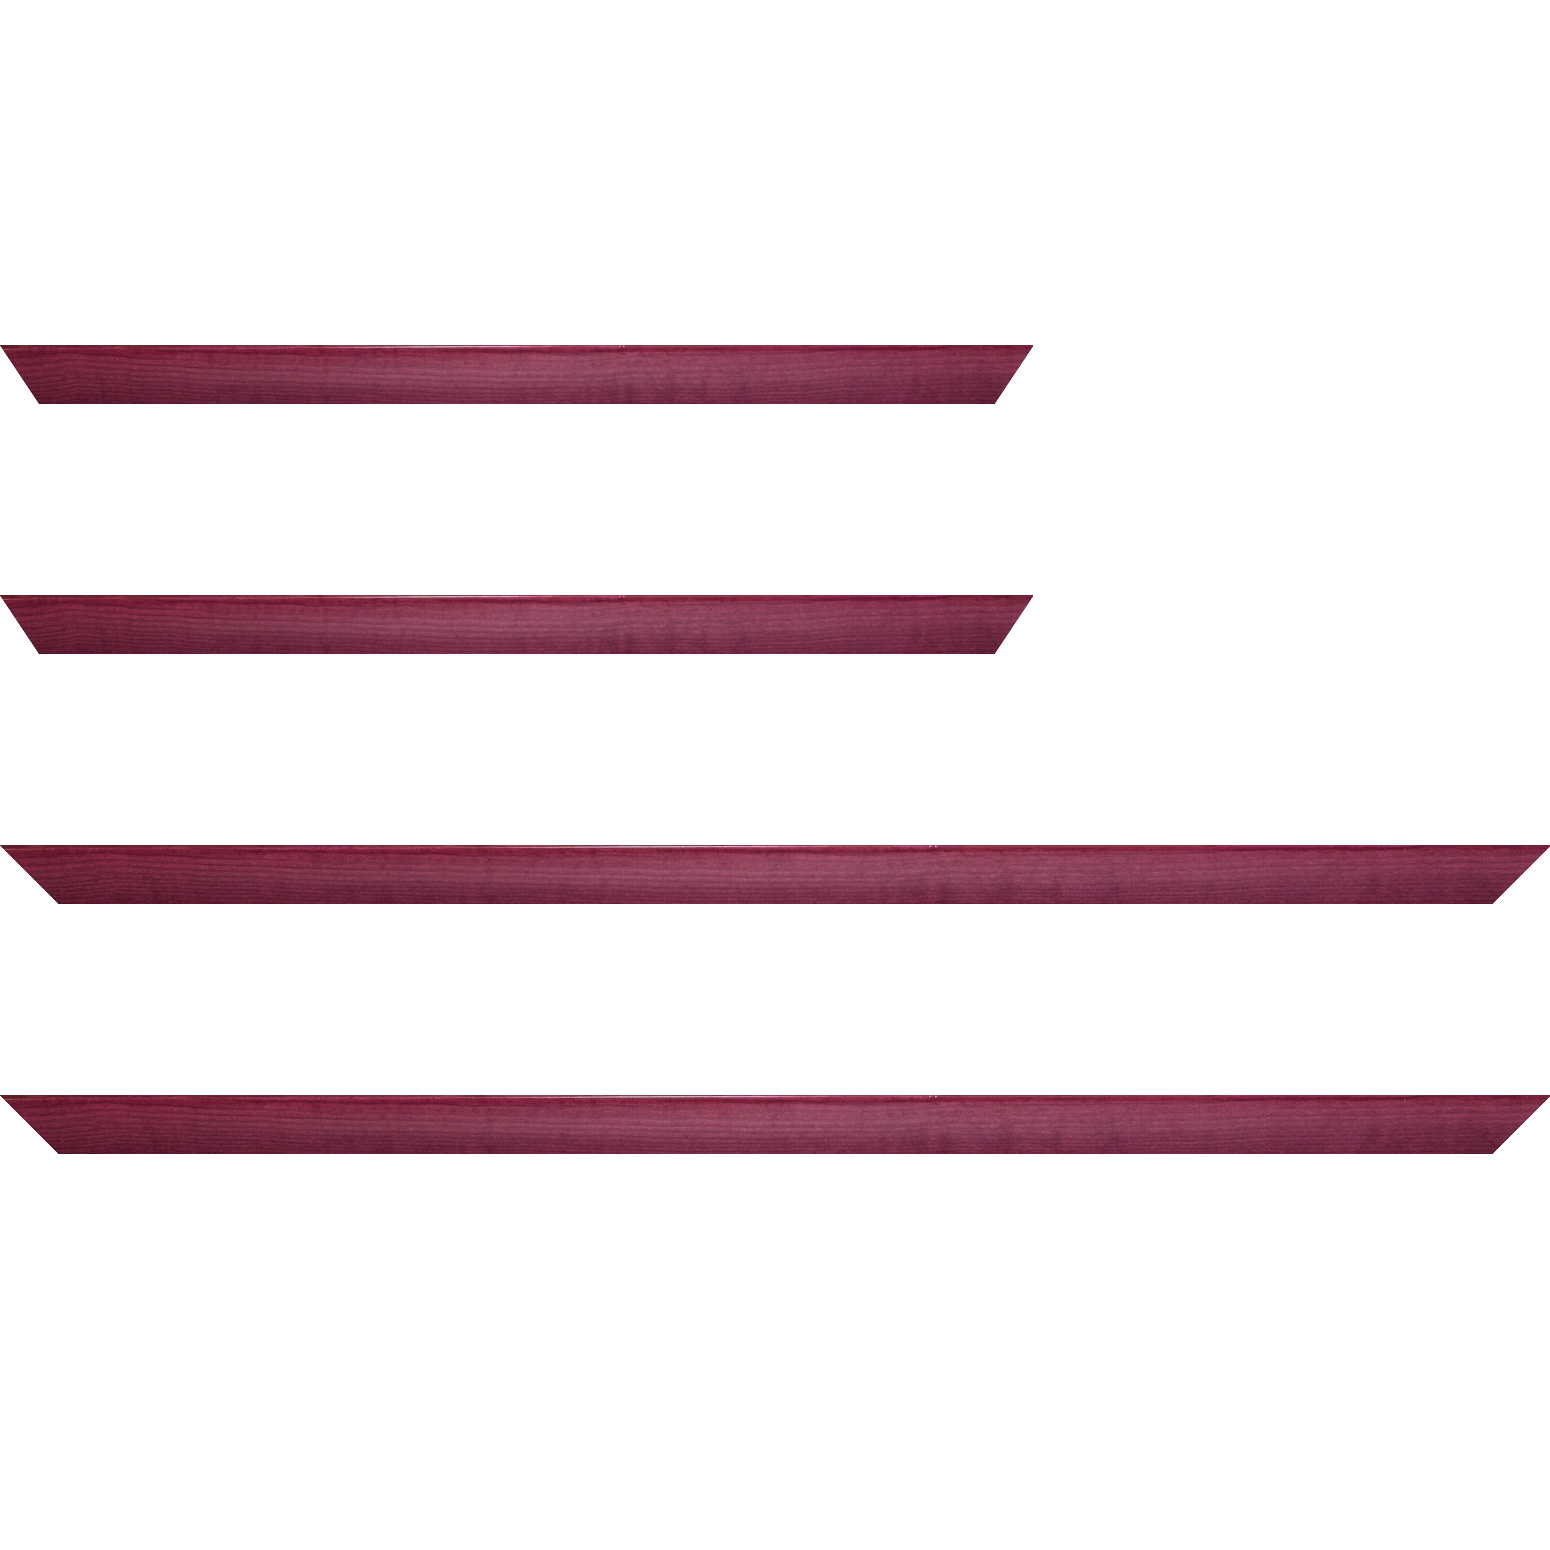 Baguette bois profil arrondi en pente plongeant largeur 2.4cm couleur rose fushia  finition vernis brillant,veine du bois  apparent (pin) ,